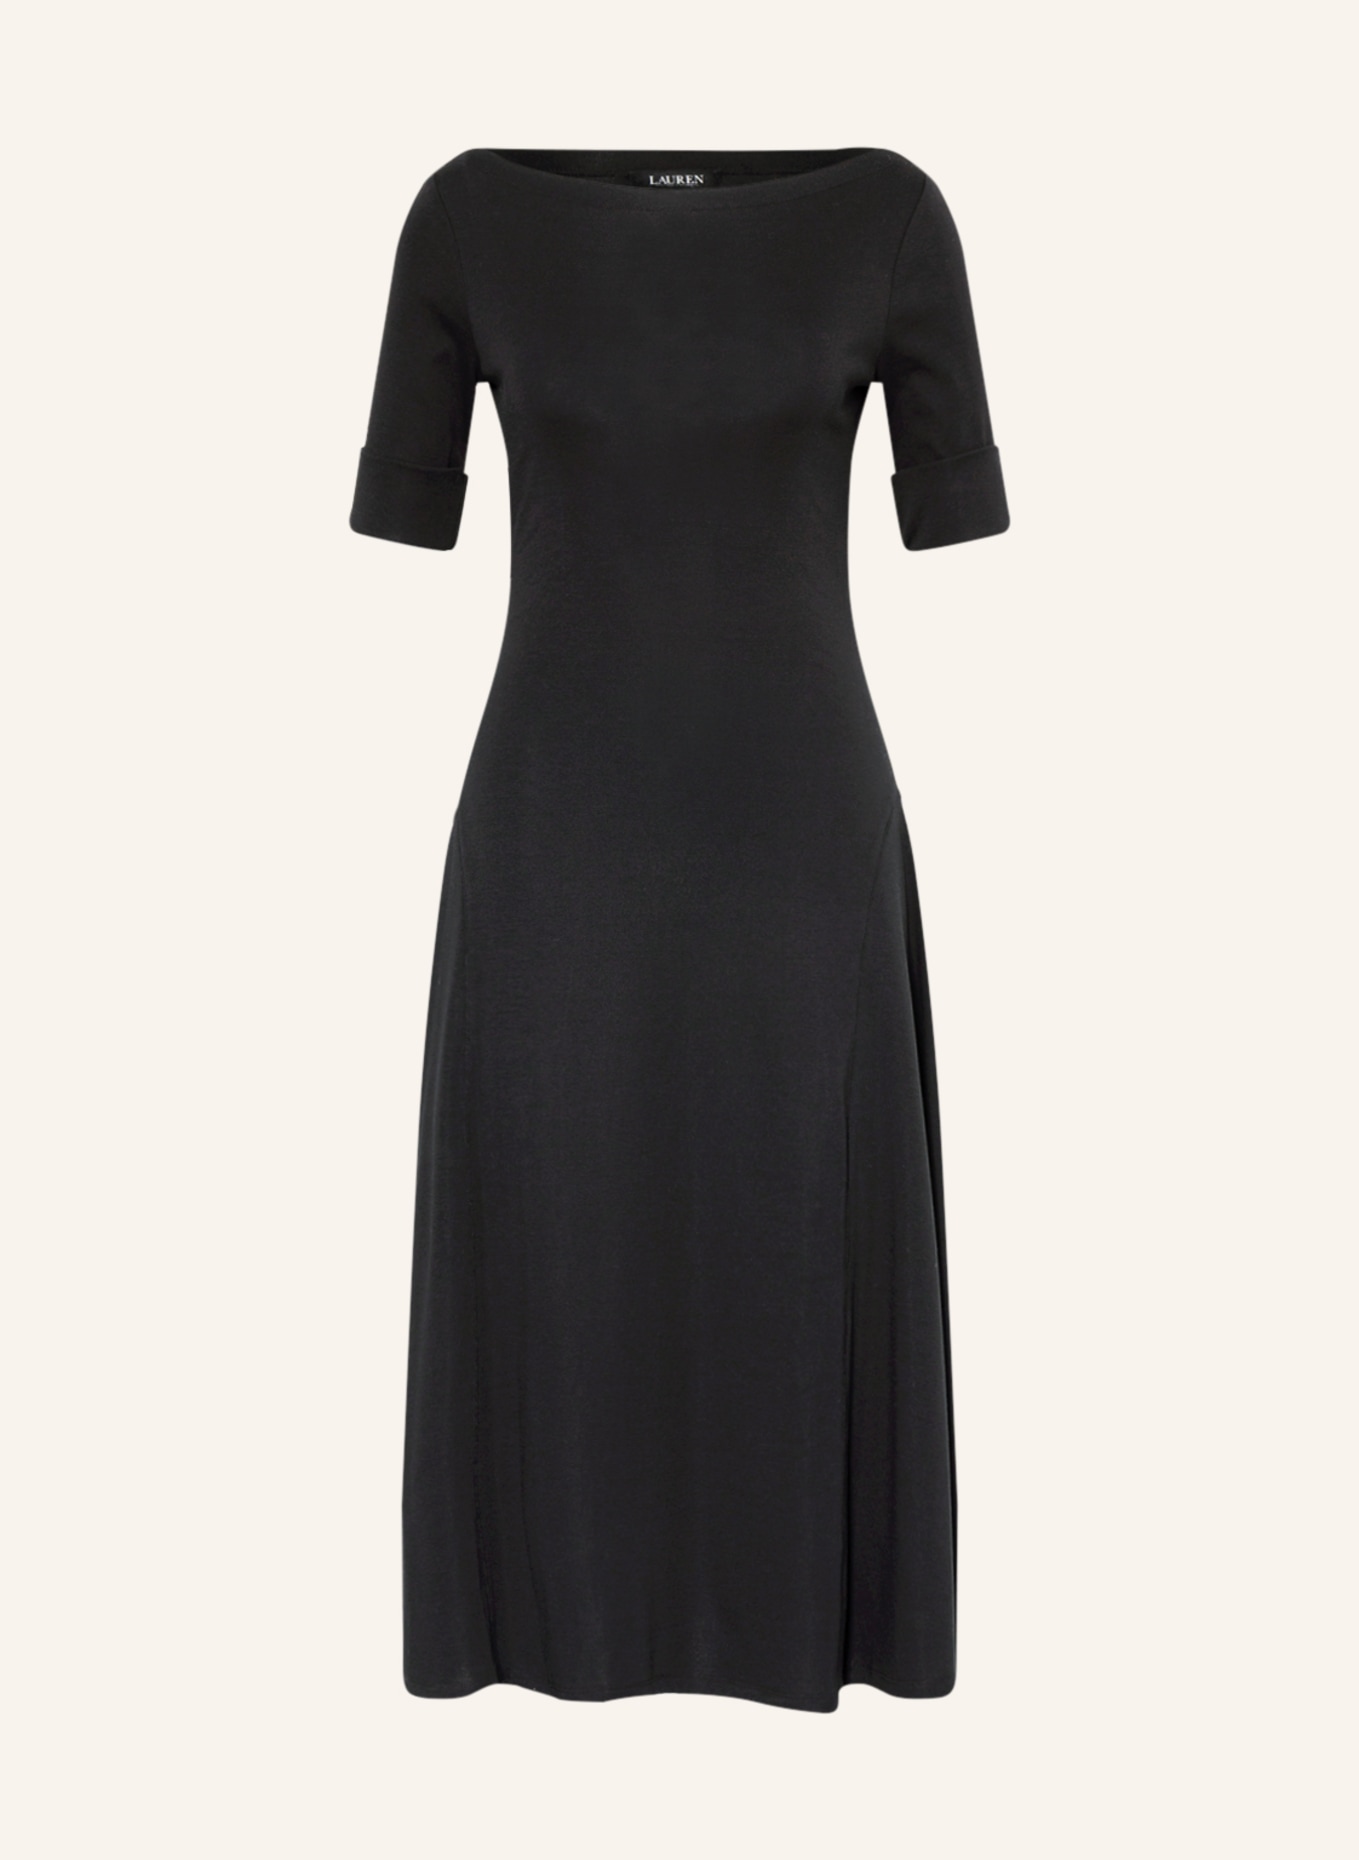 LAUREN RALPH LAUREN Jersey dress, Color: BLACK (Image 1)